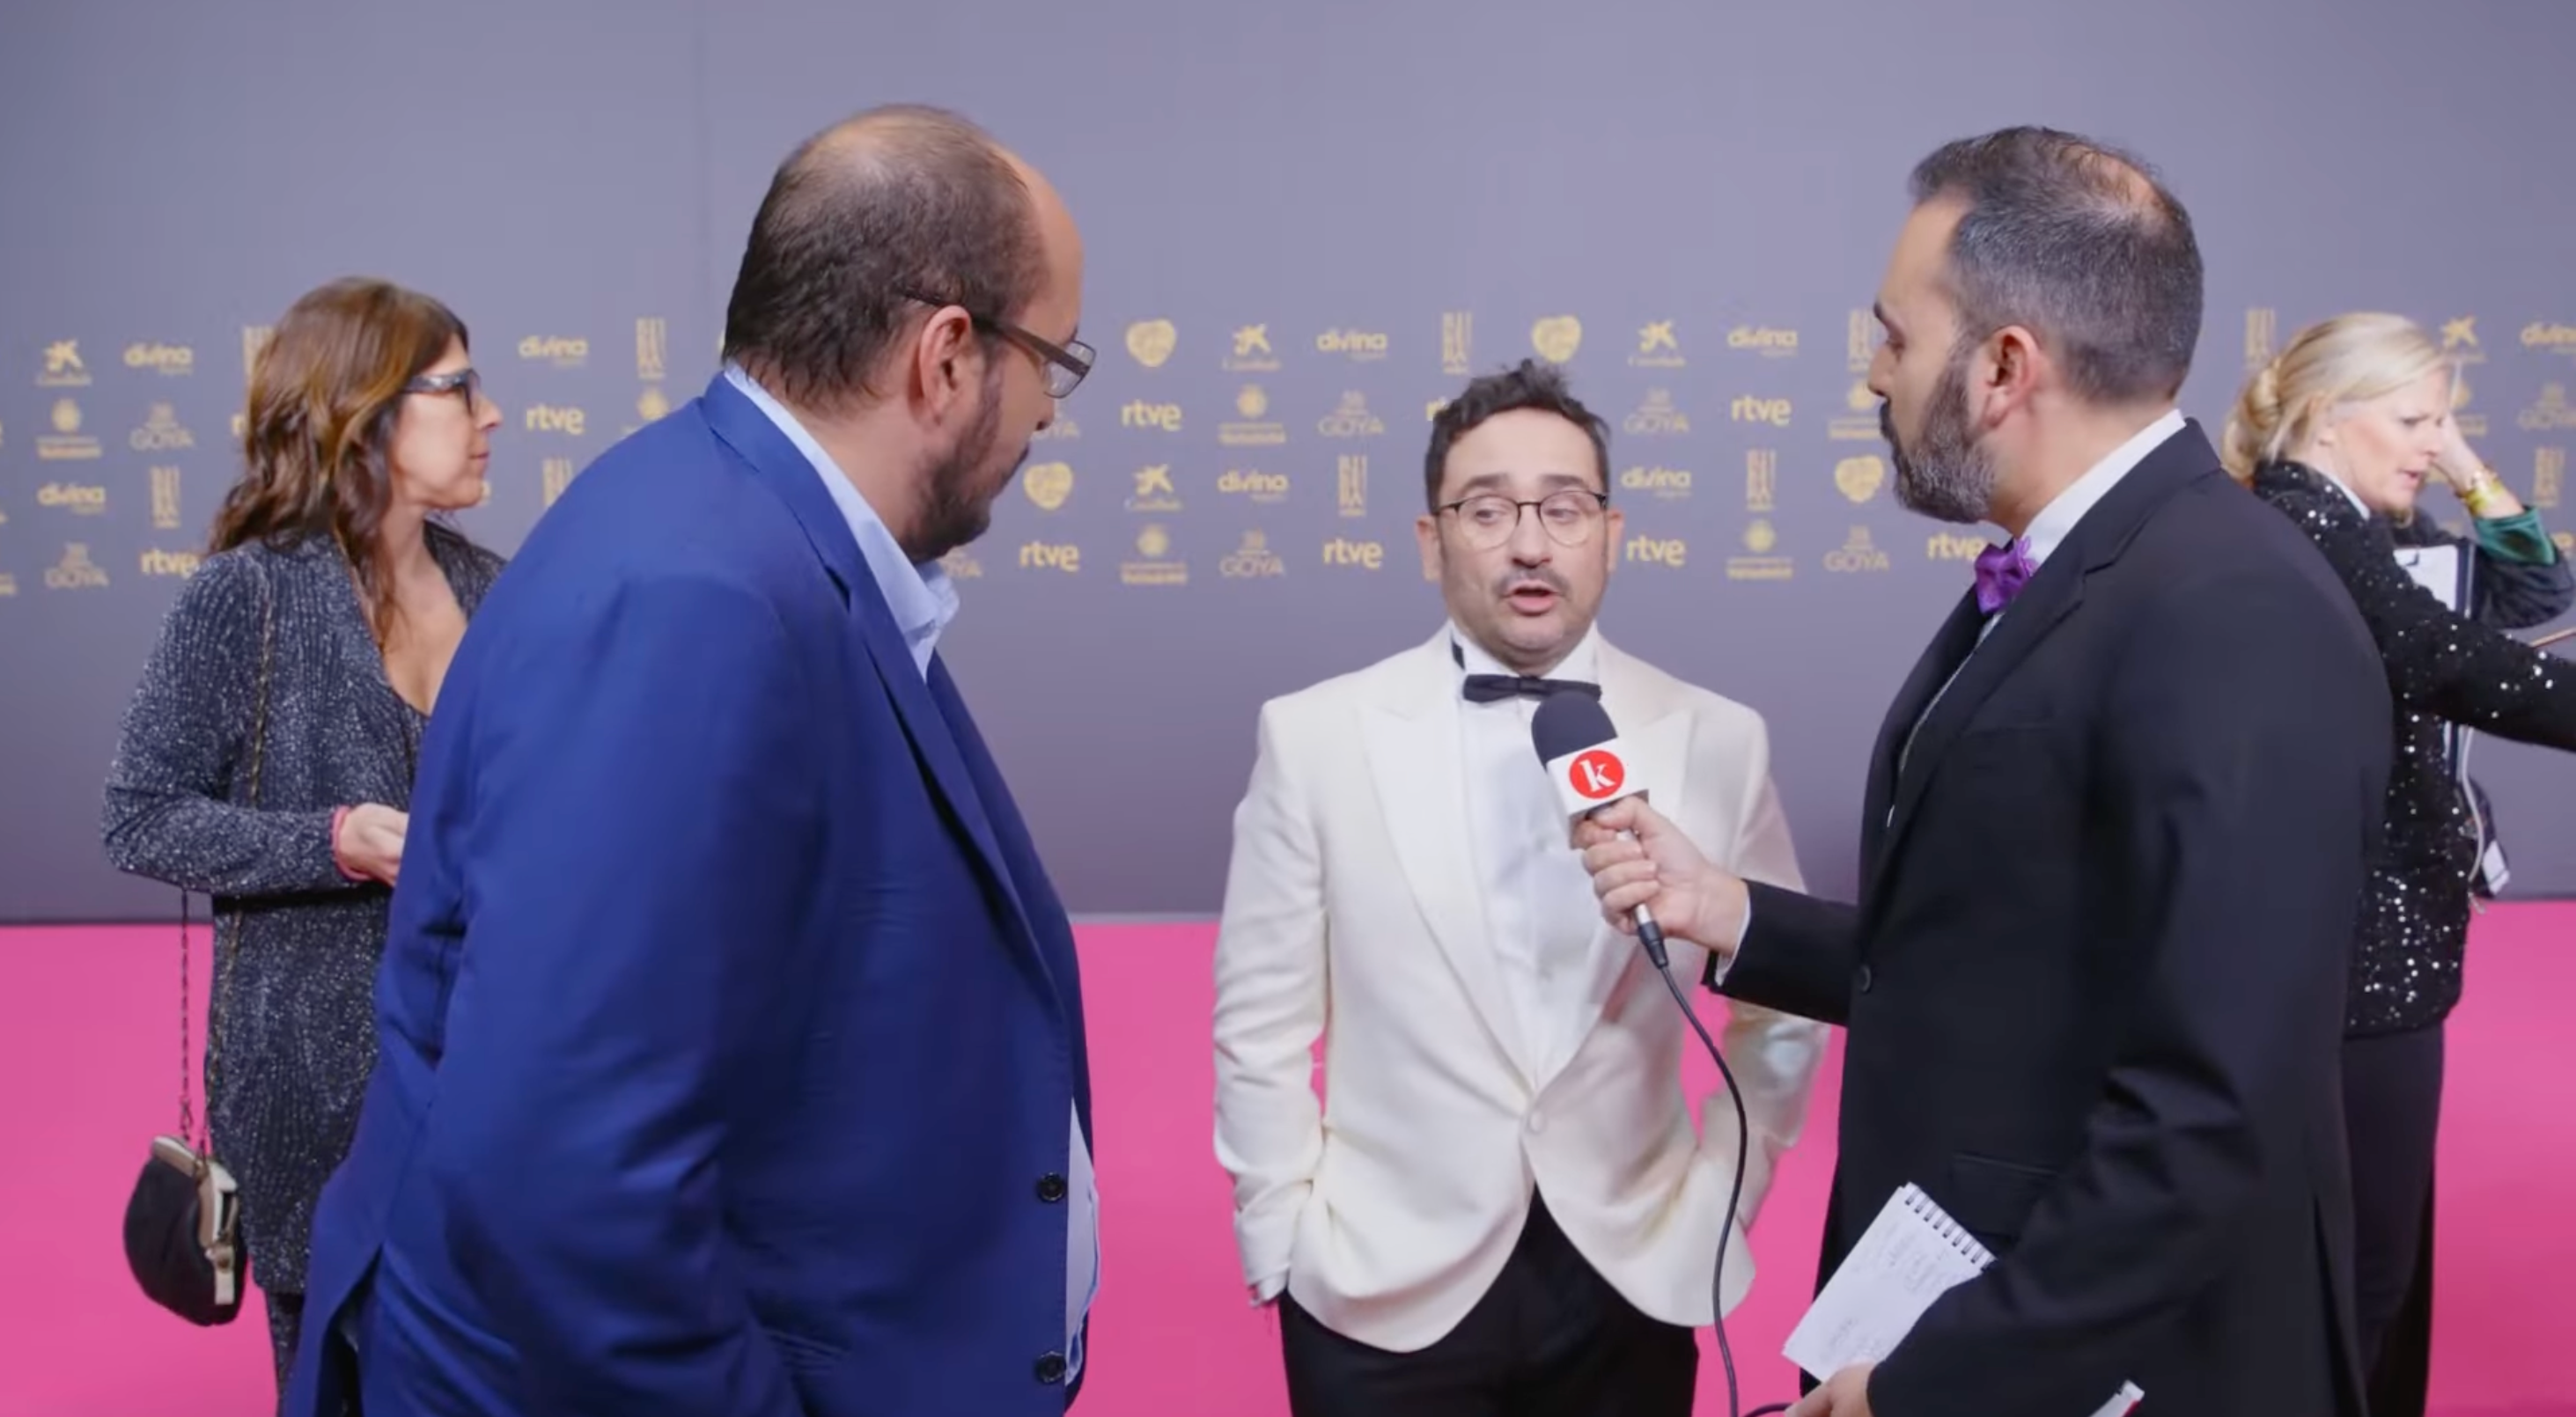 Núria Costa, Dani Mantilla, J.A. Bayona y David Martos durante la retransmisión en directo de Kinótico de la alfombra roja de la 38 edición de los Premios Goya